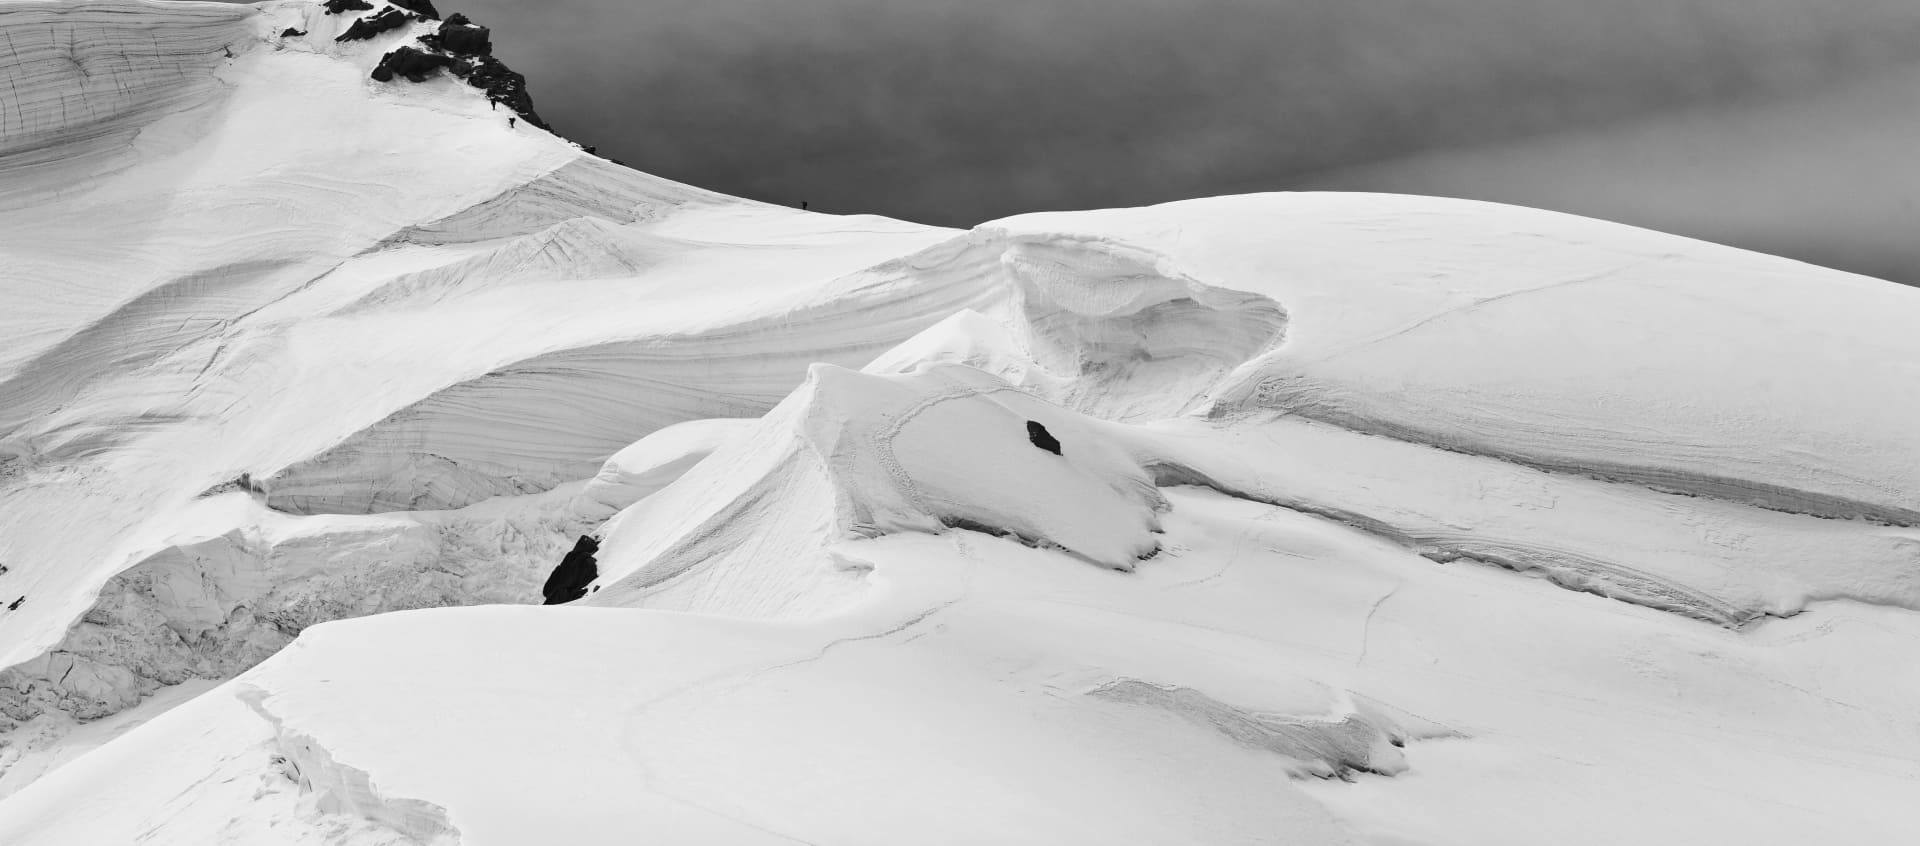 montagna ricoperta di neve con escursionisti che si arrampicano in fila